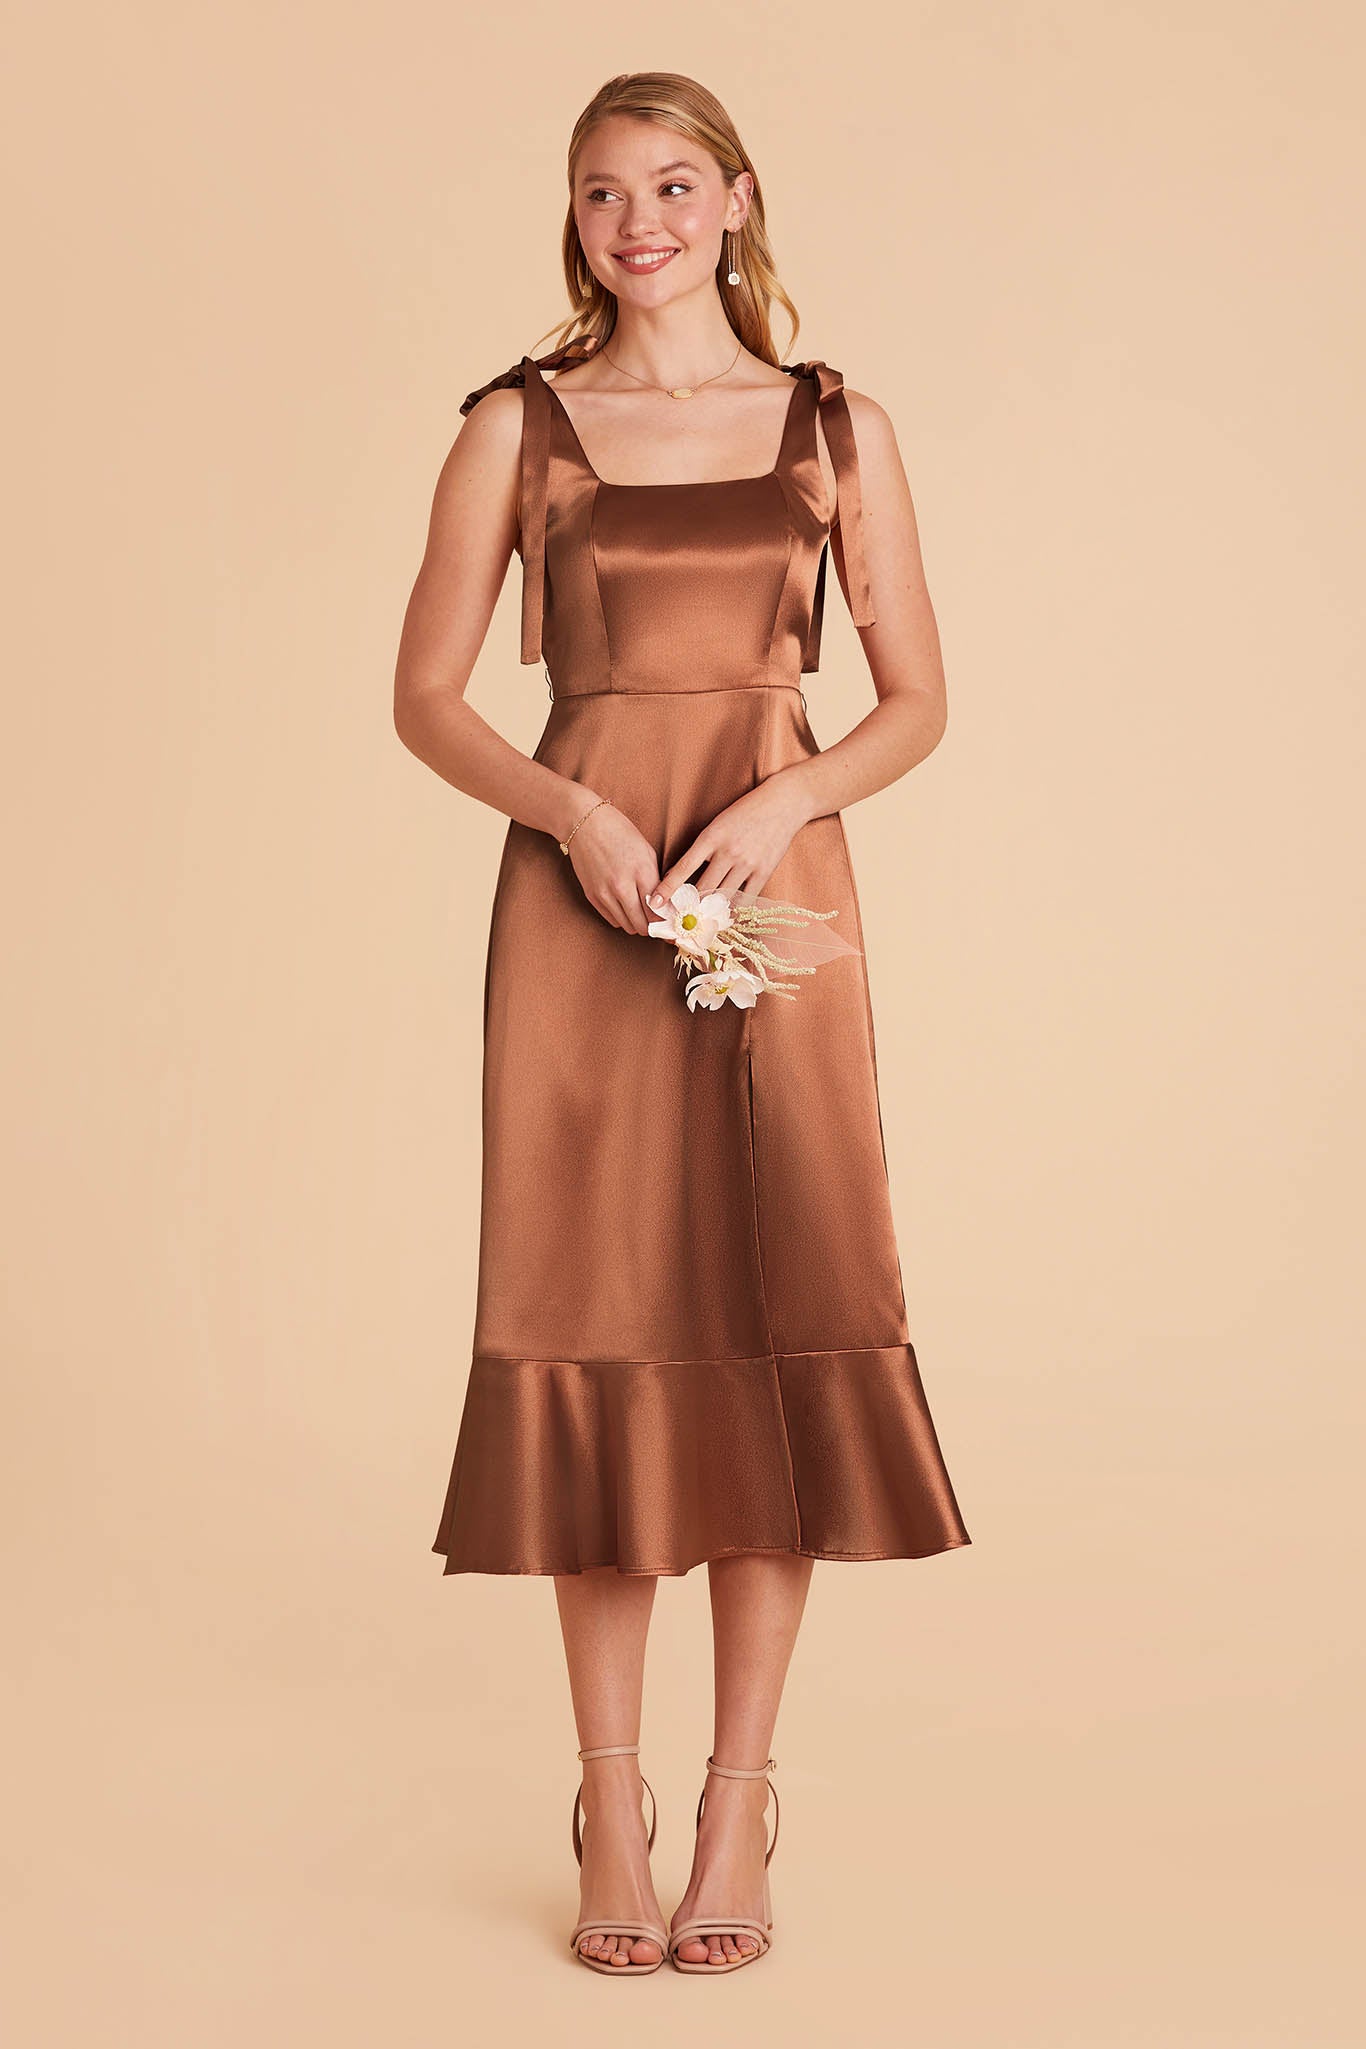 rust brown satin convertible pinafore-style midi bridesmaid dress with bows and ruffles